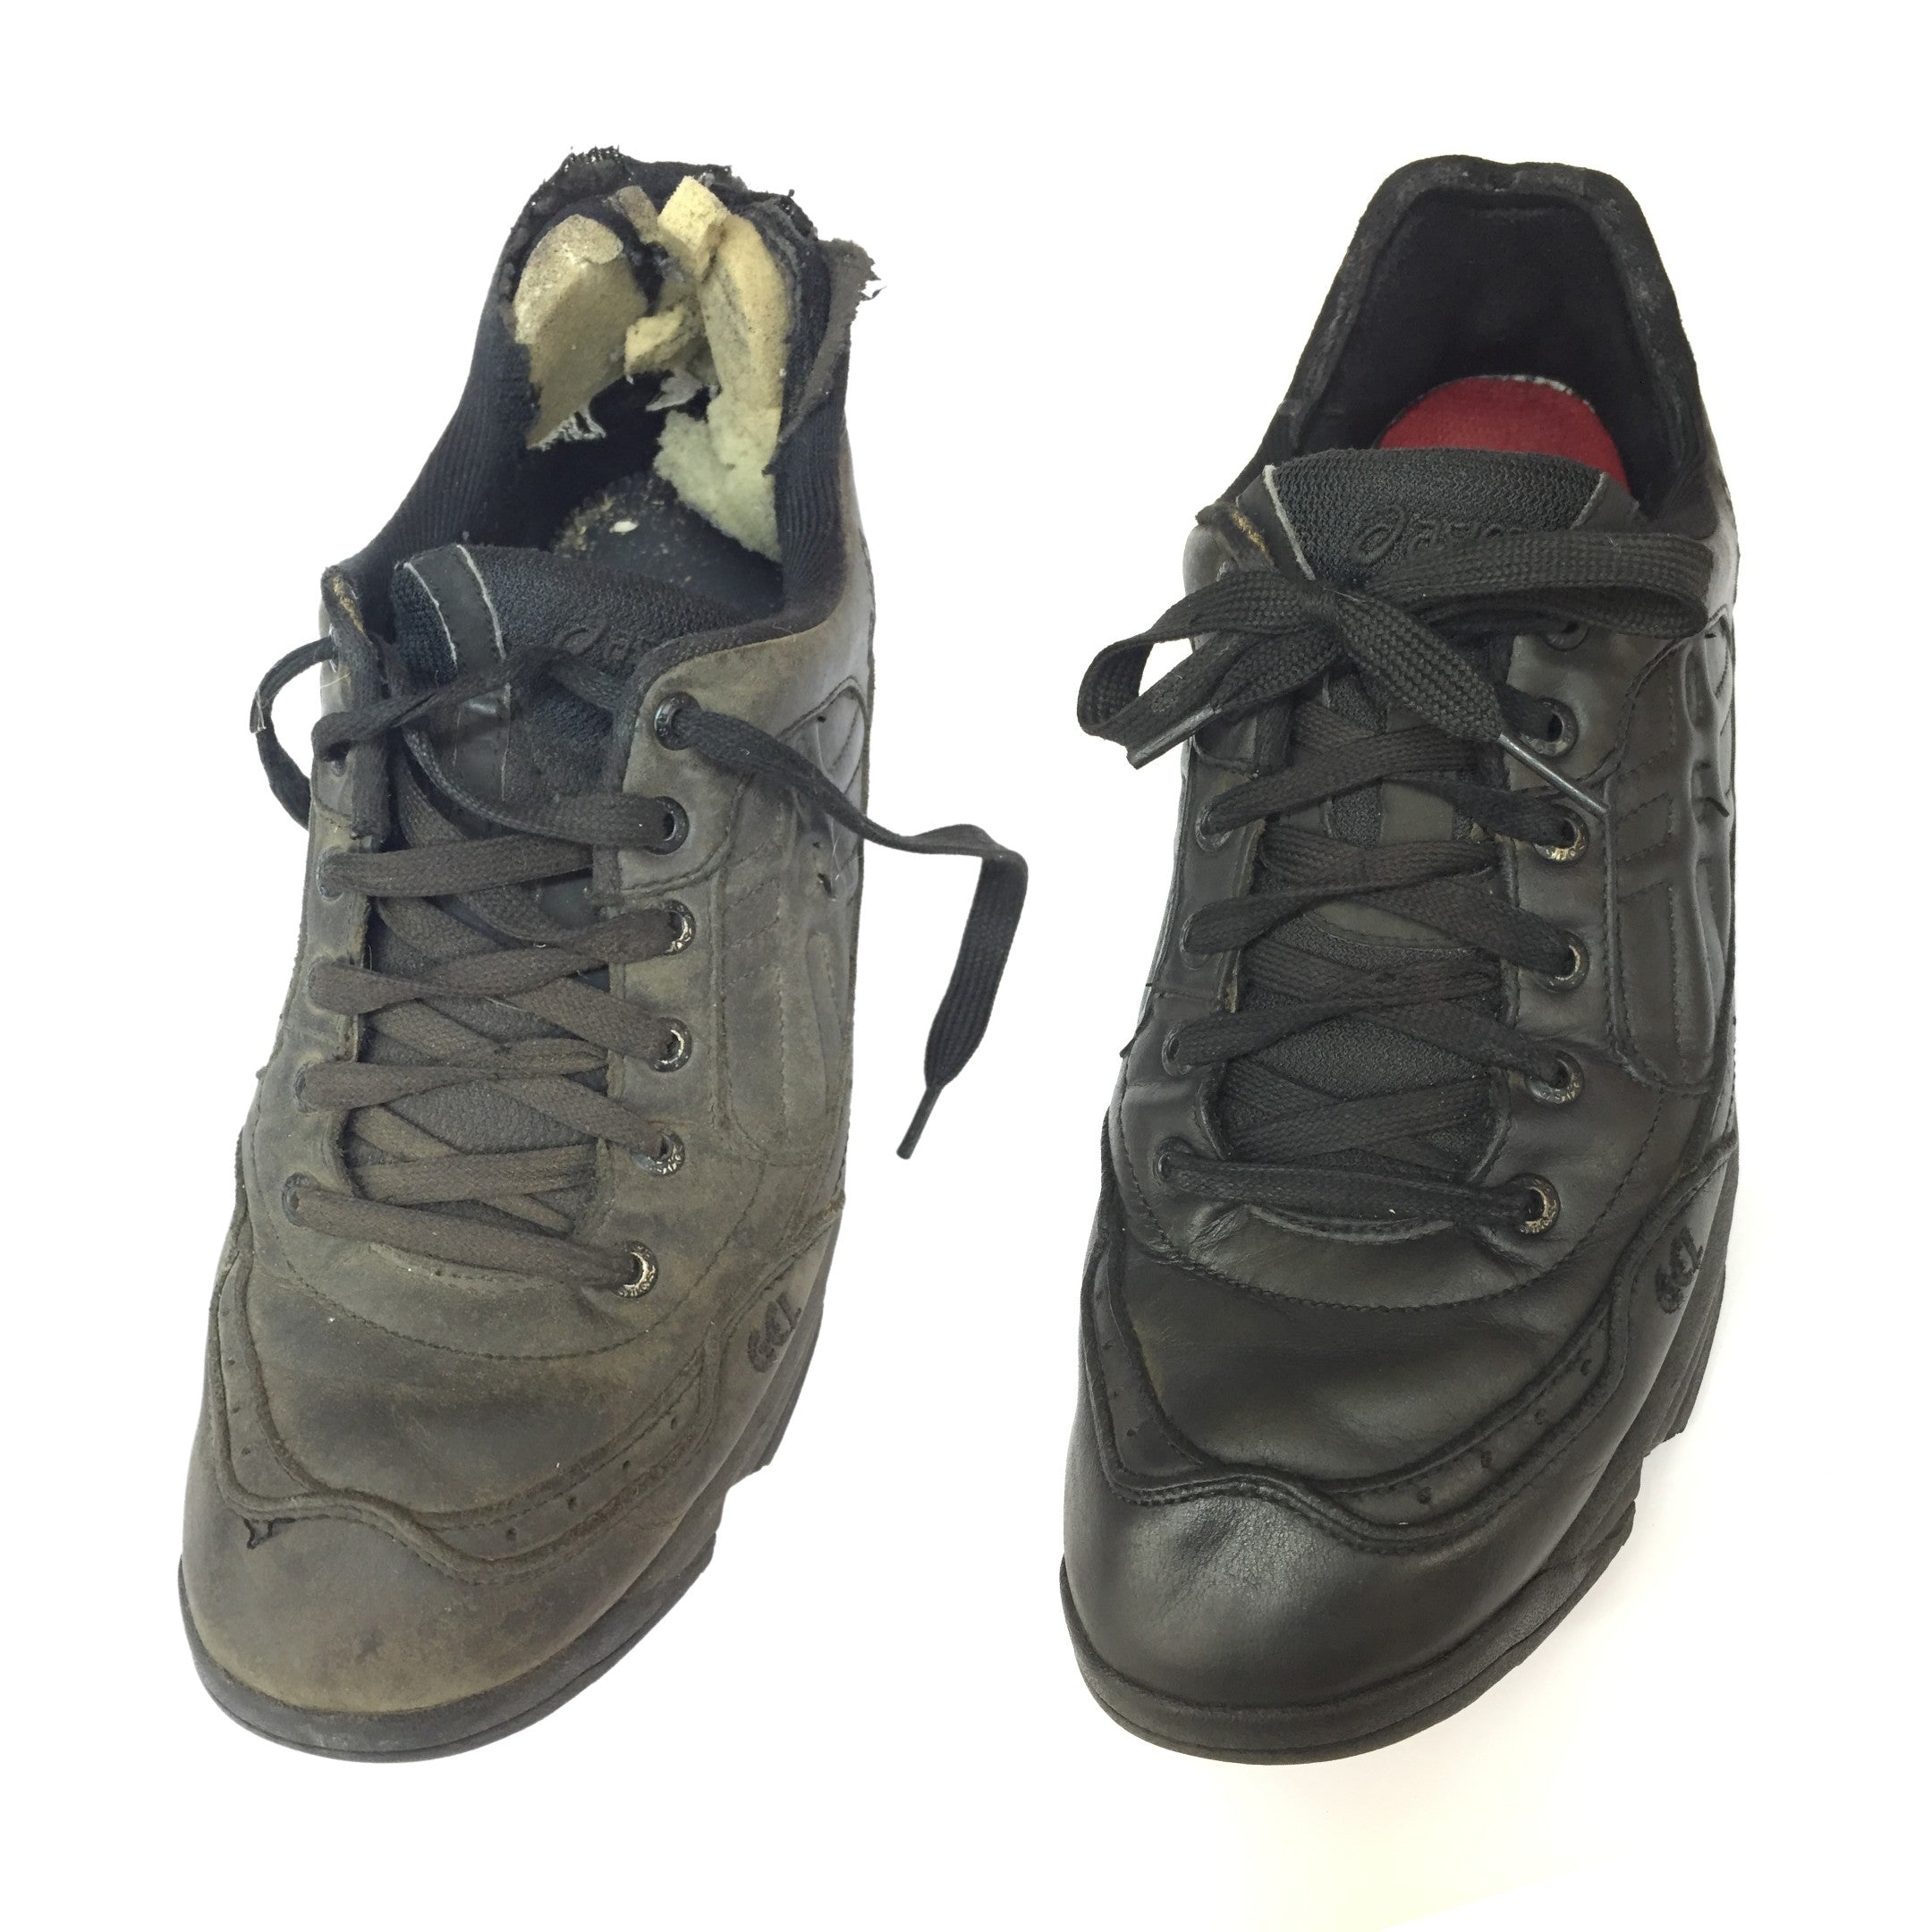 Worn Sneaker-Linings-Repaired-on-Black-Asics